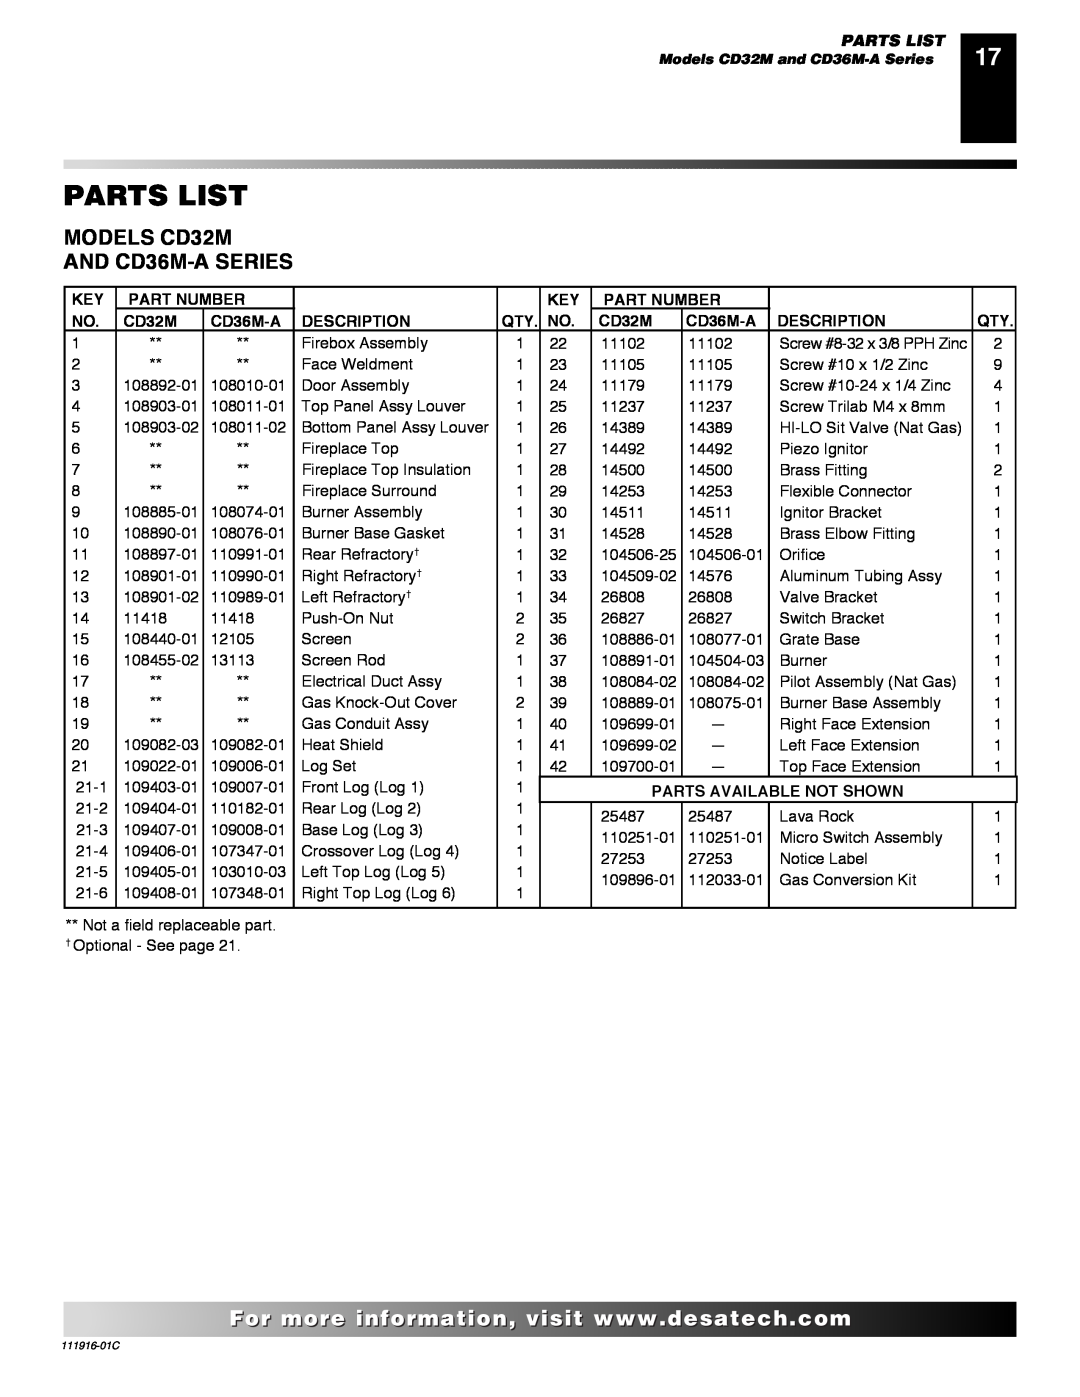 Desa CD32M (-1)(-2) installation manual Parts List, Part Number, CD36M-A, Description, Parts Available Not Shown 